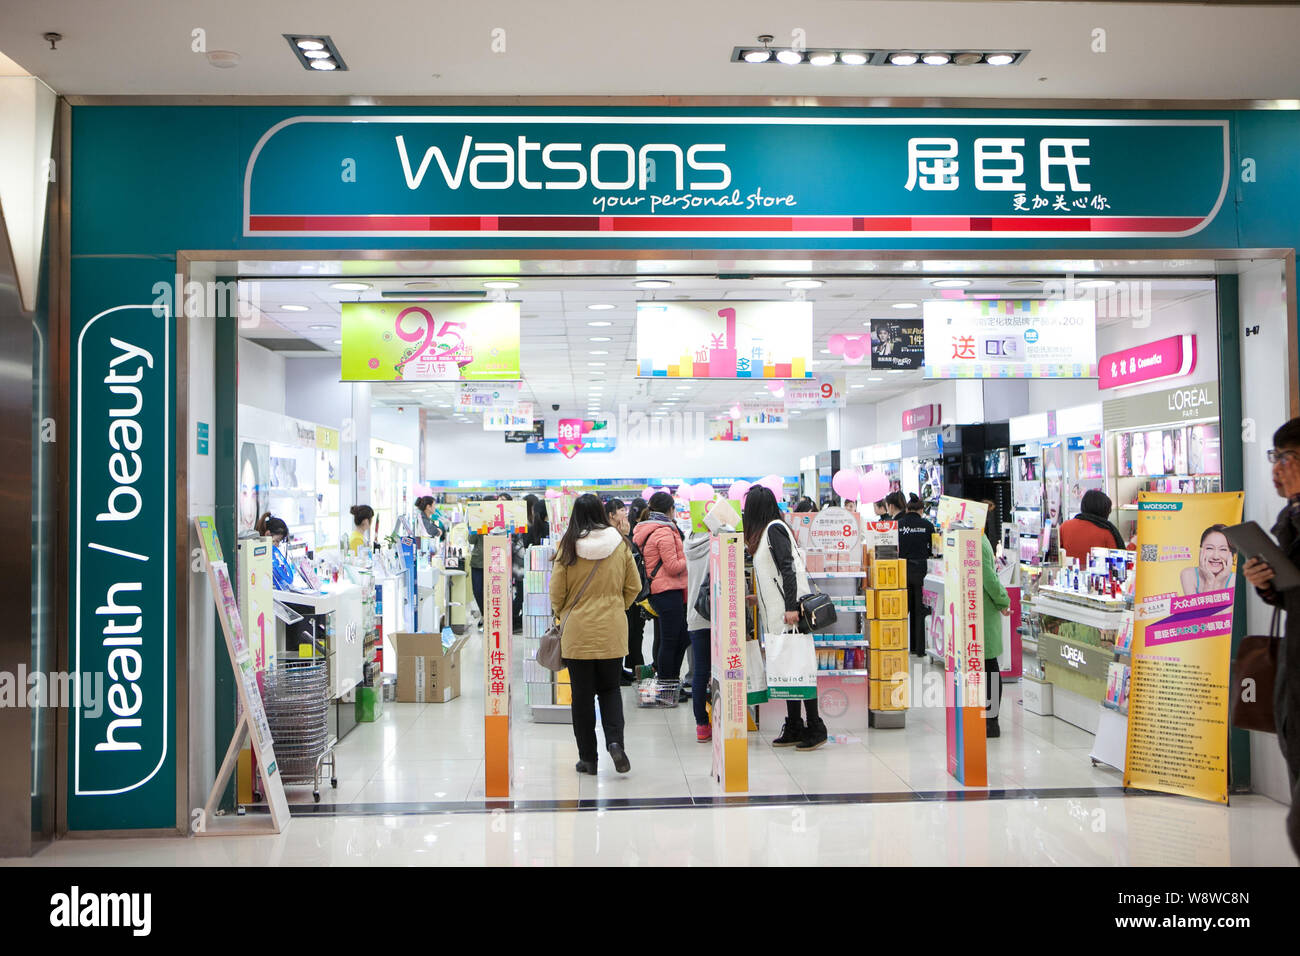 https://c8.alamy.com/compes/w8wc8n/archivo-clientes-comprar-en-una-tienda-de-watsons-en-un-centro-comercial-de-shanghai-china-5-de-marzo-de-2014-magnate-asiatico-li-ka-shing-vendera-cerca-de-un-25-por-c-w8wc8n.jpg